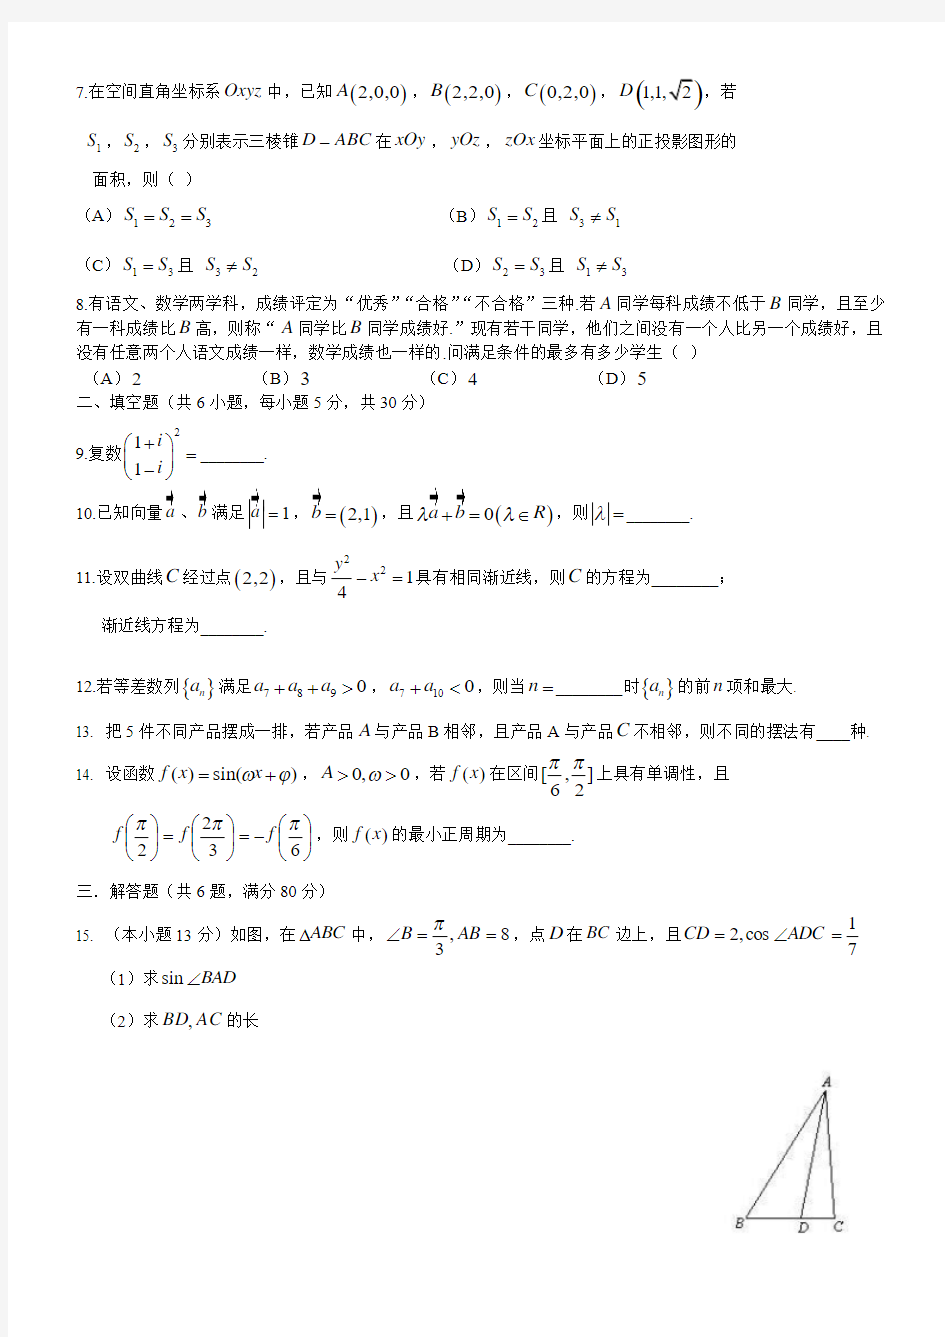 2014北京高考数学理科纯word版本